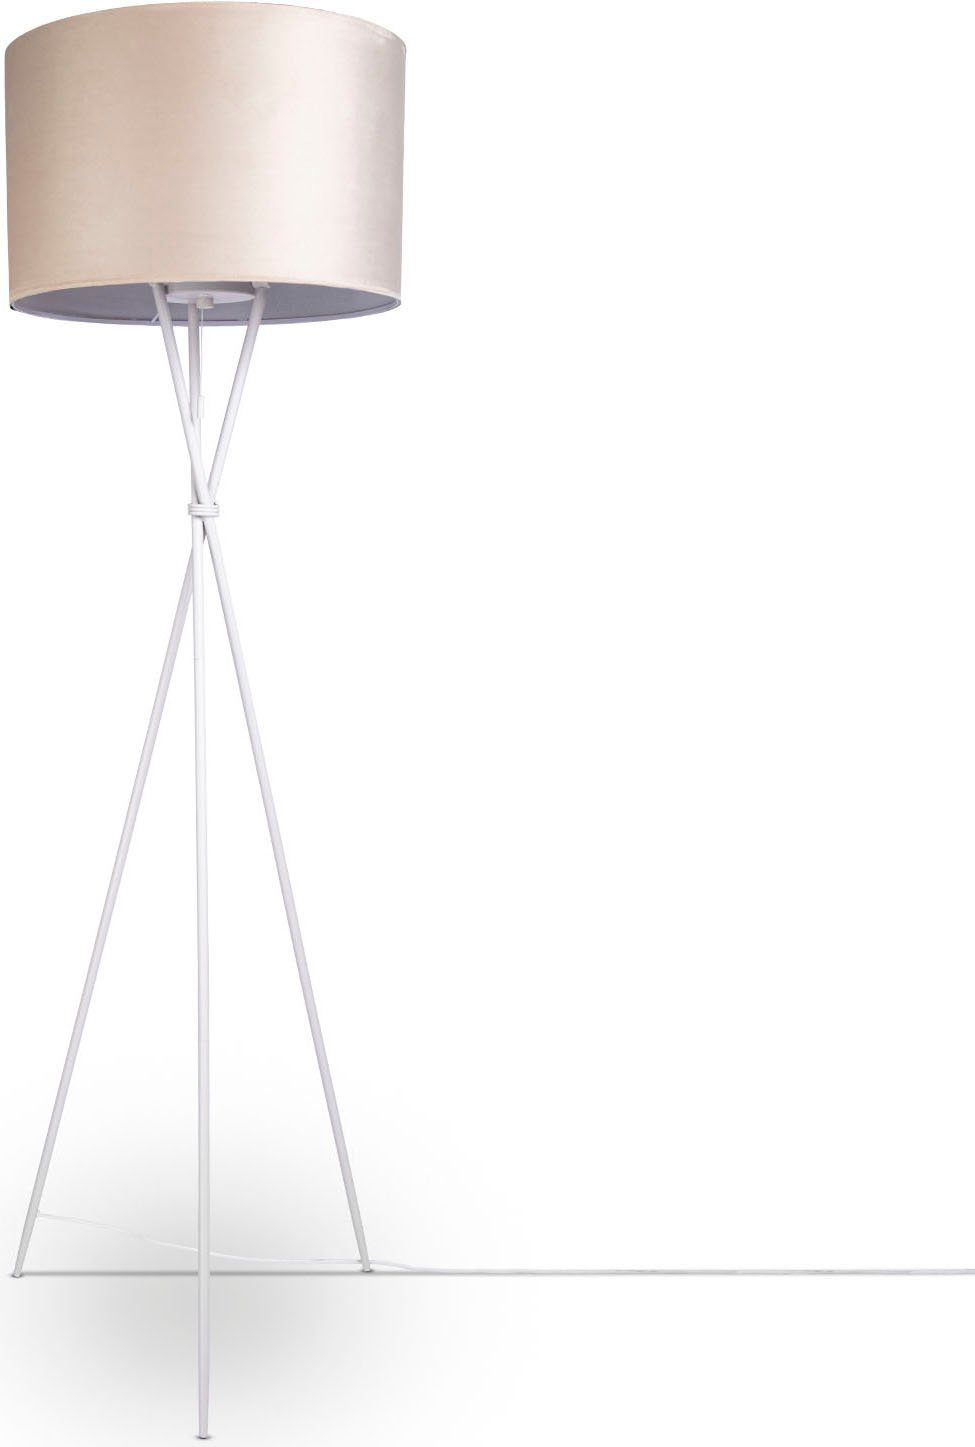 Paco Home Lampen online kaufen | OTTO